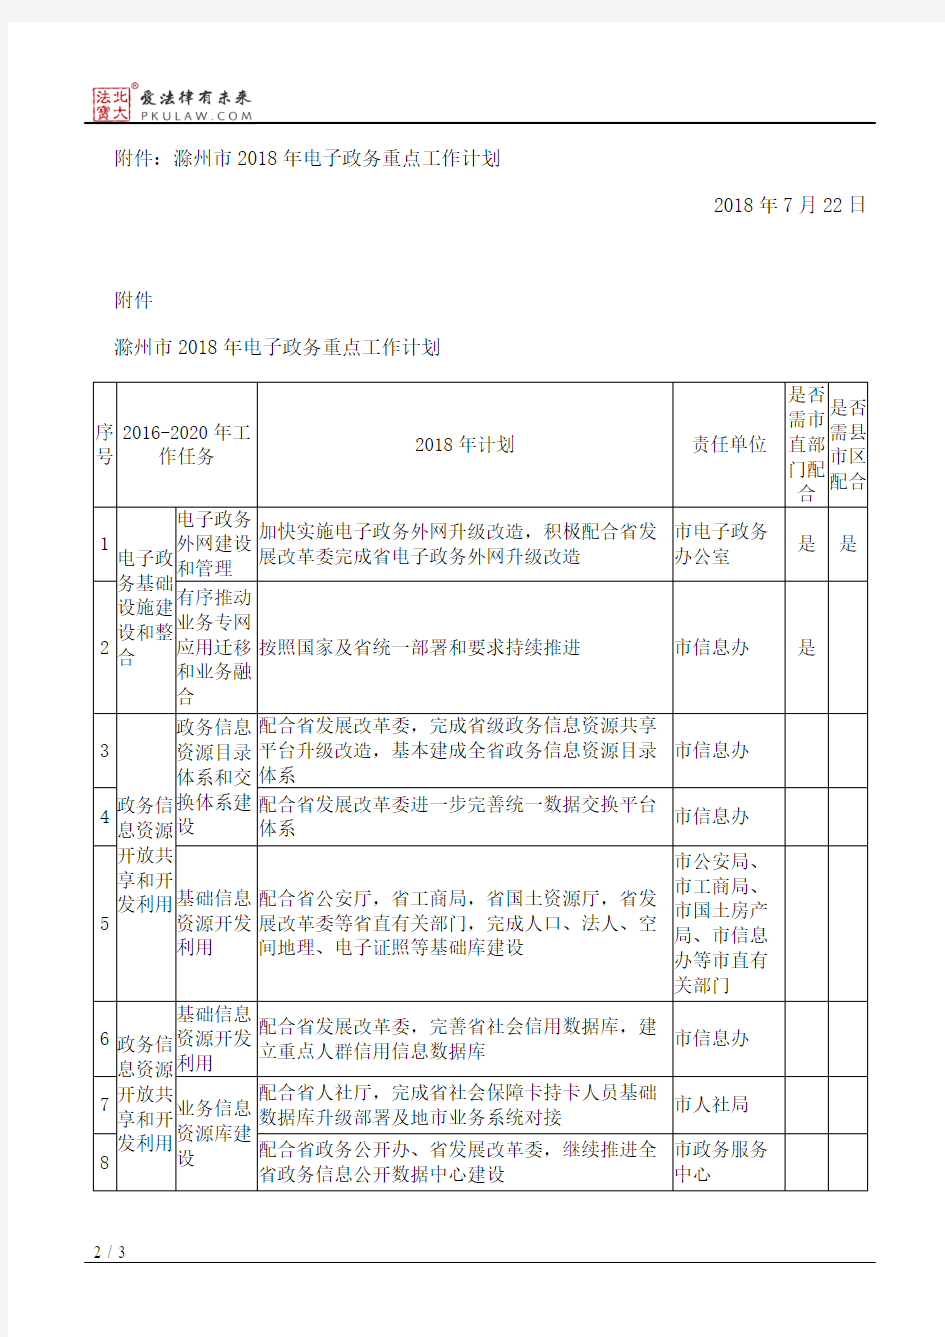 滁州市人民政府办公室关于印发滁州市2018年电子政务重点工作计划的通知